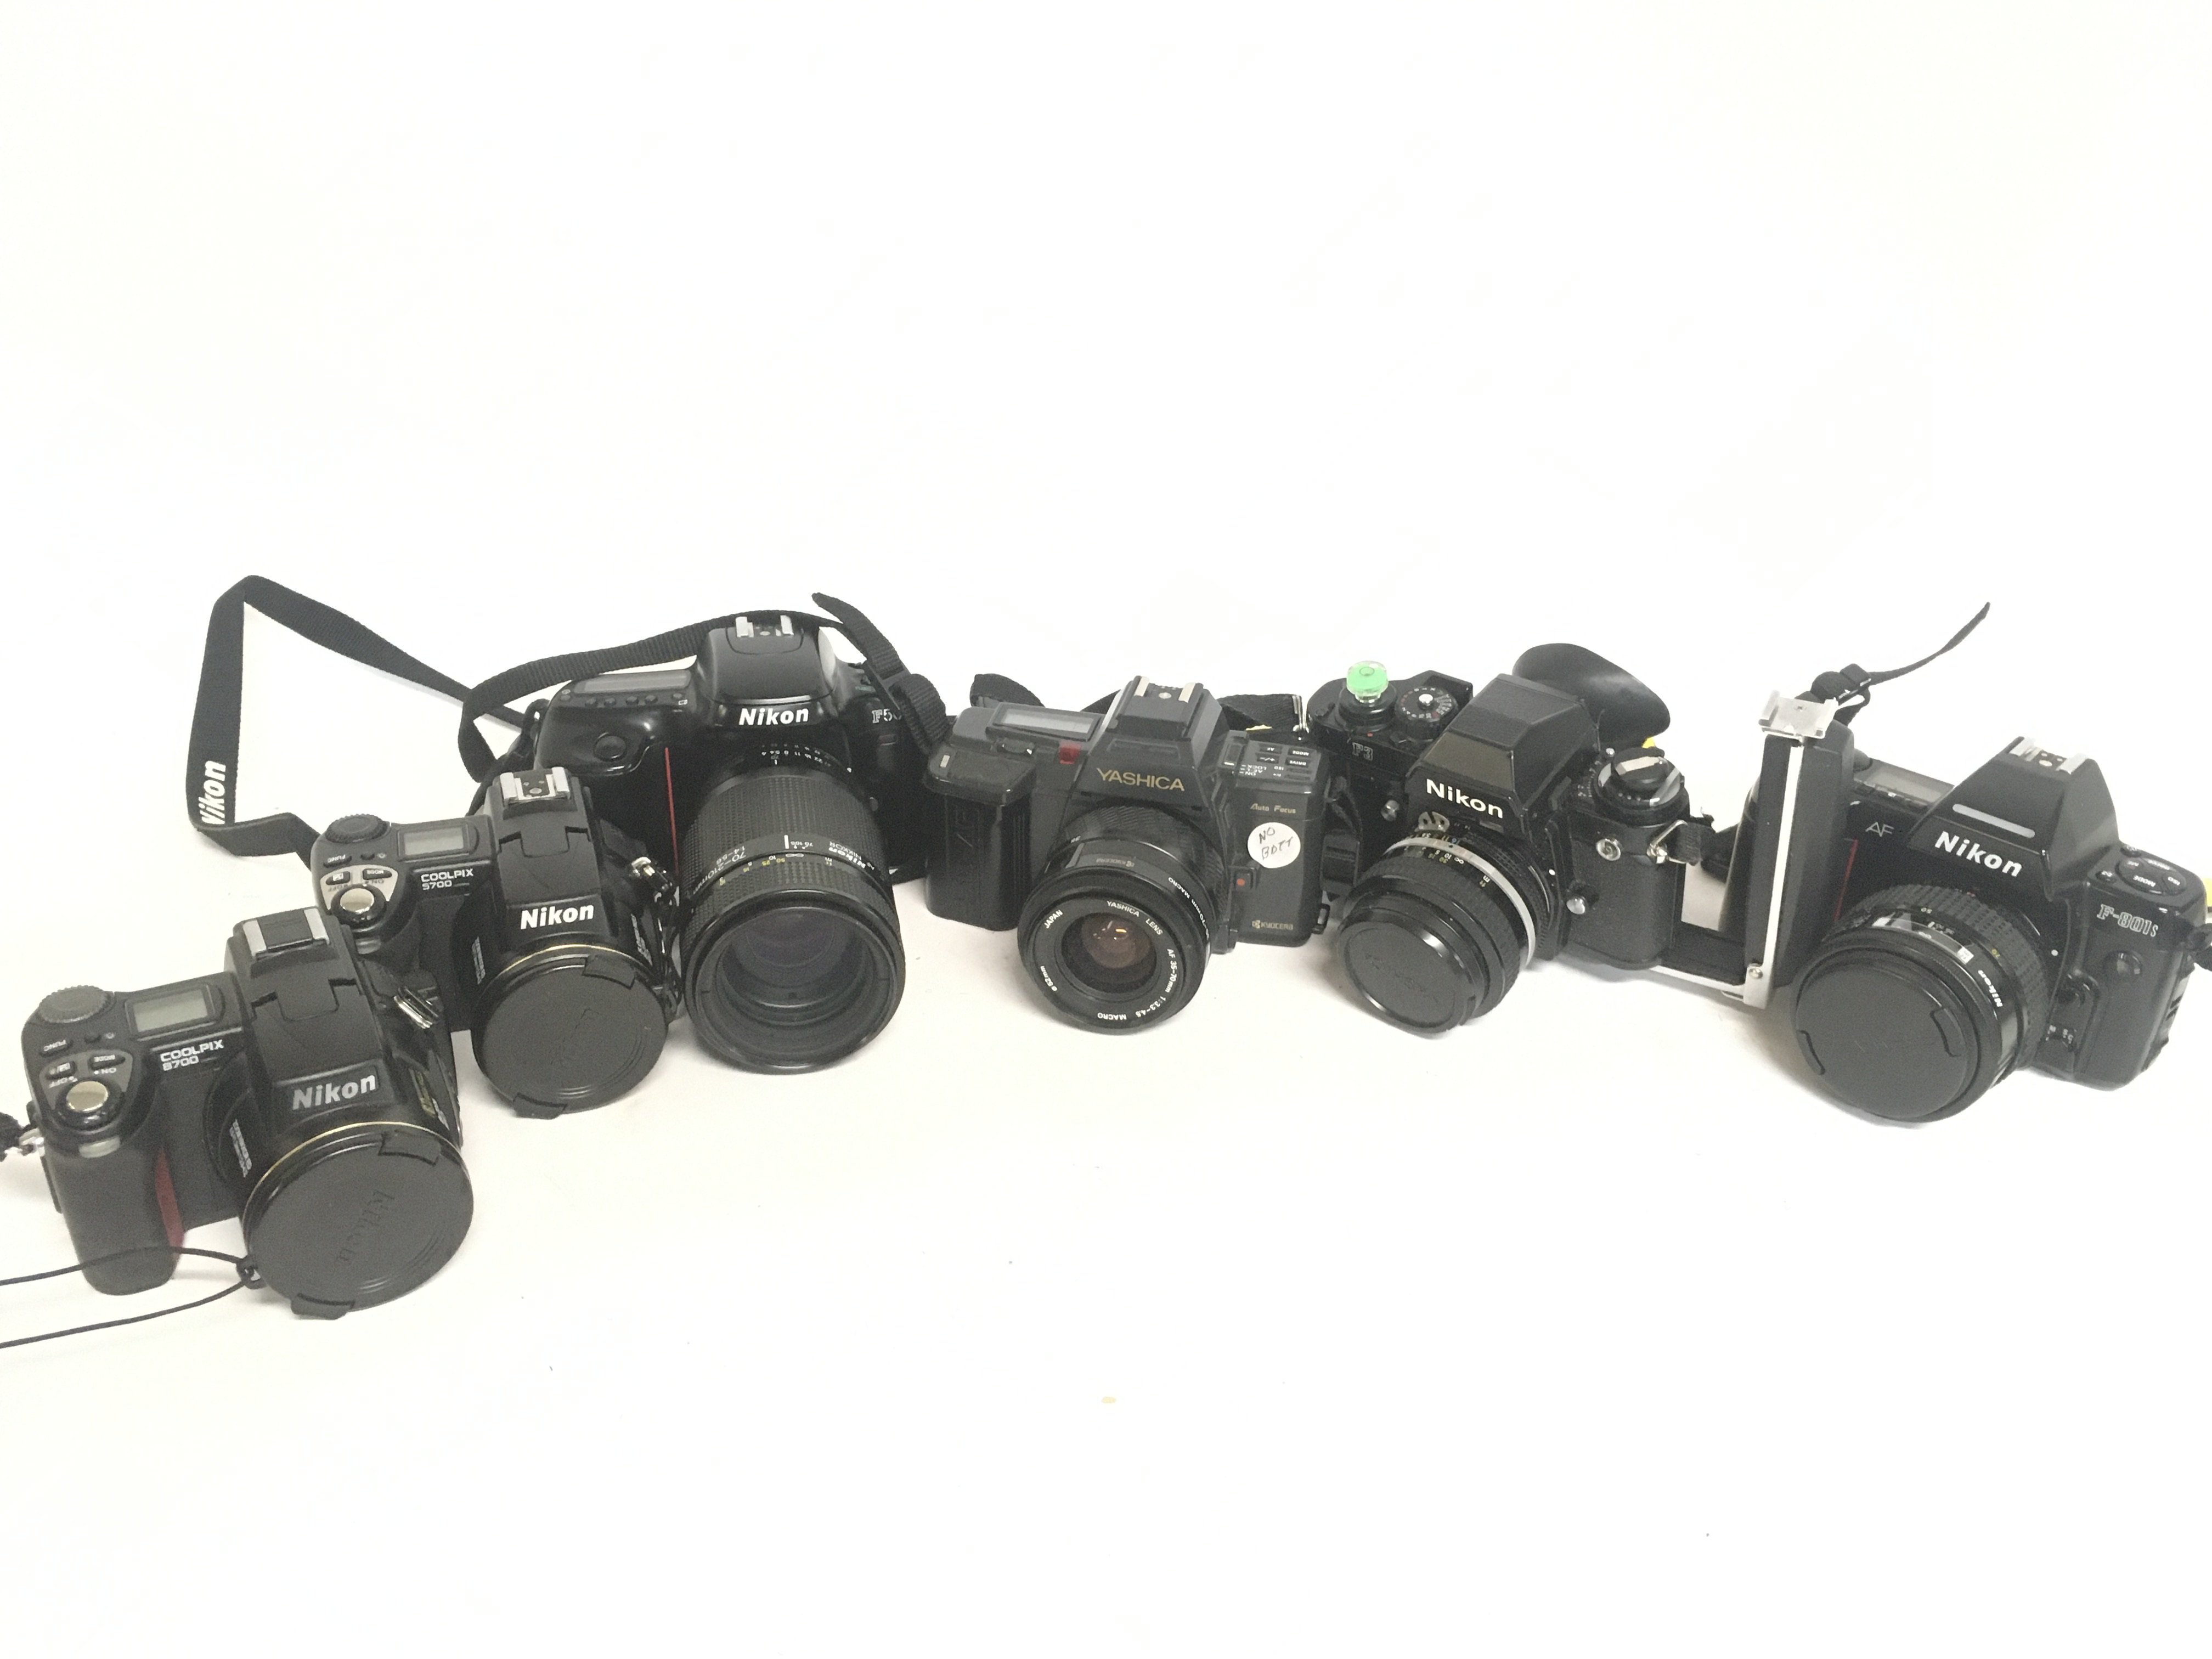 Vintage cameras including Nikon Coolpix 8700, 5700